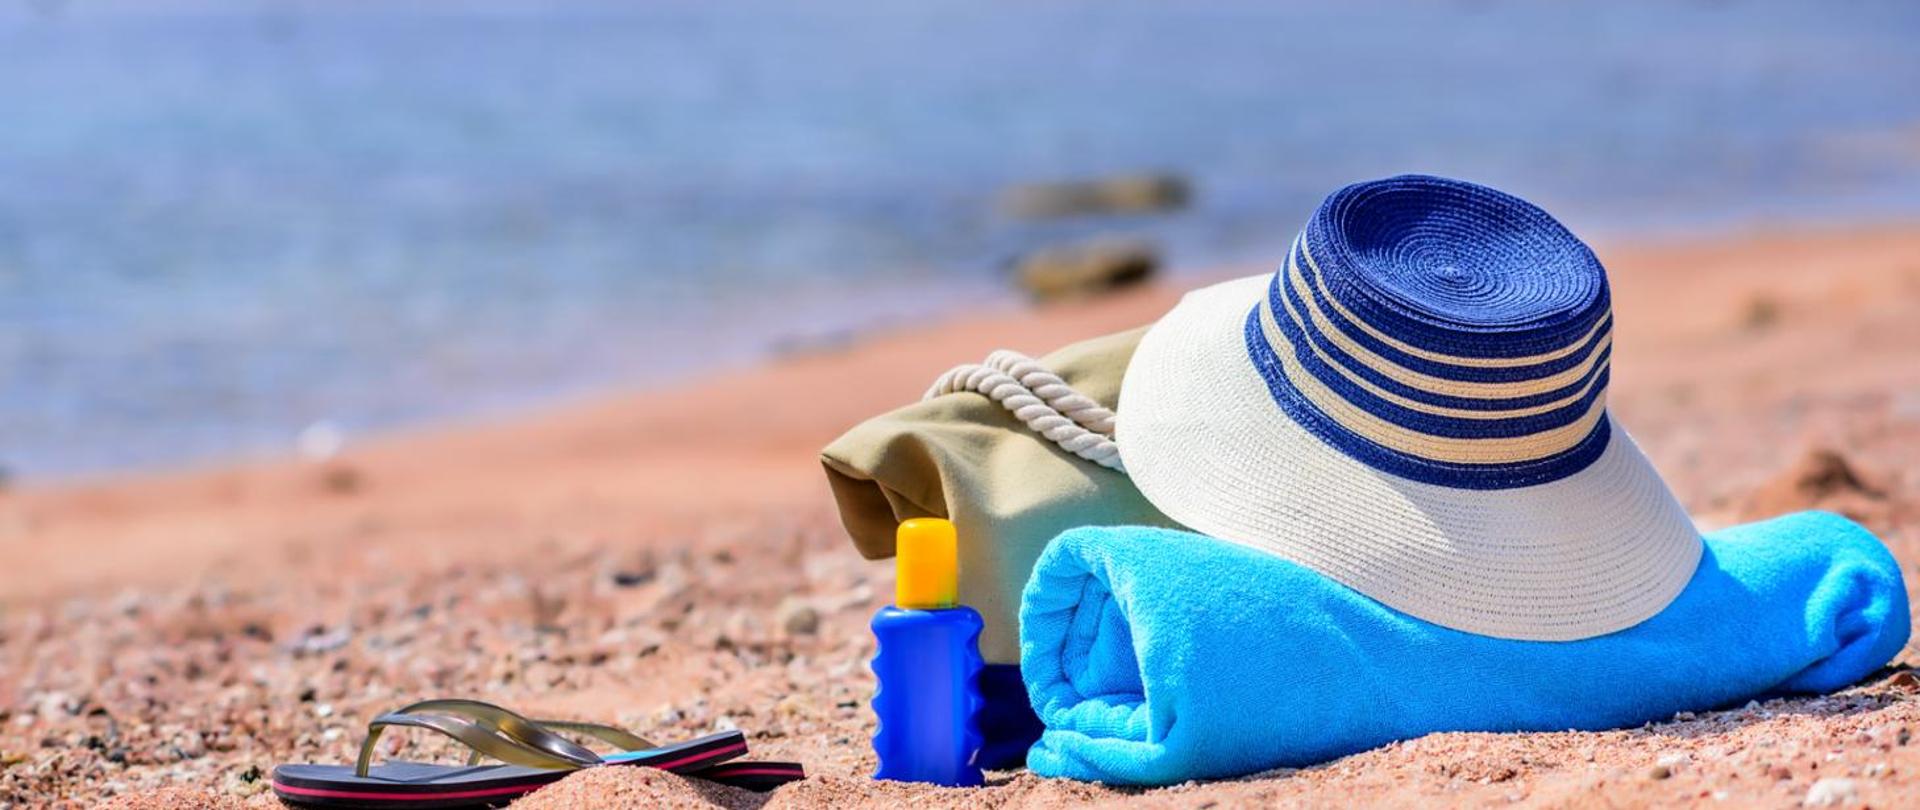 Zdjęcie przedstawia piaszczystą plażę. Na piasku leży torba plażowa, kapelusz, olejek do opalania i klapek